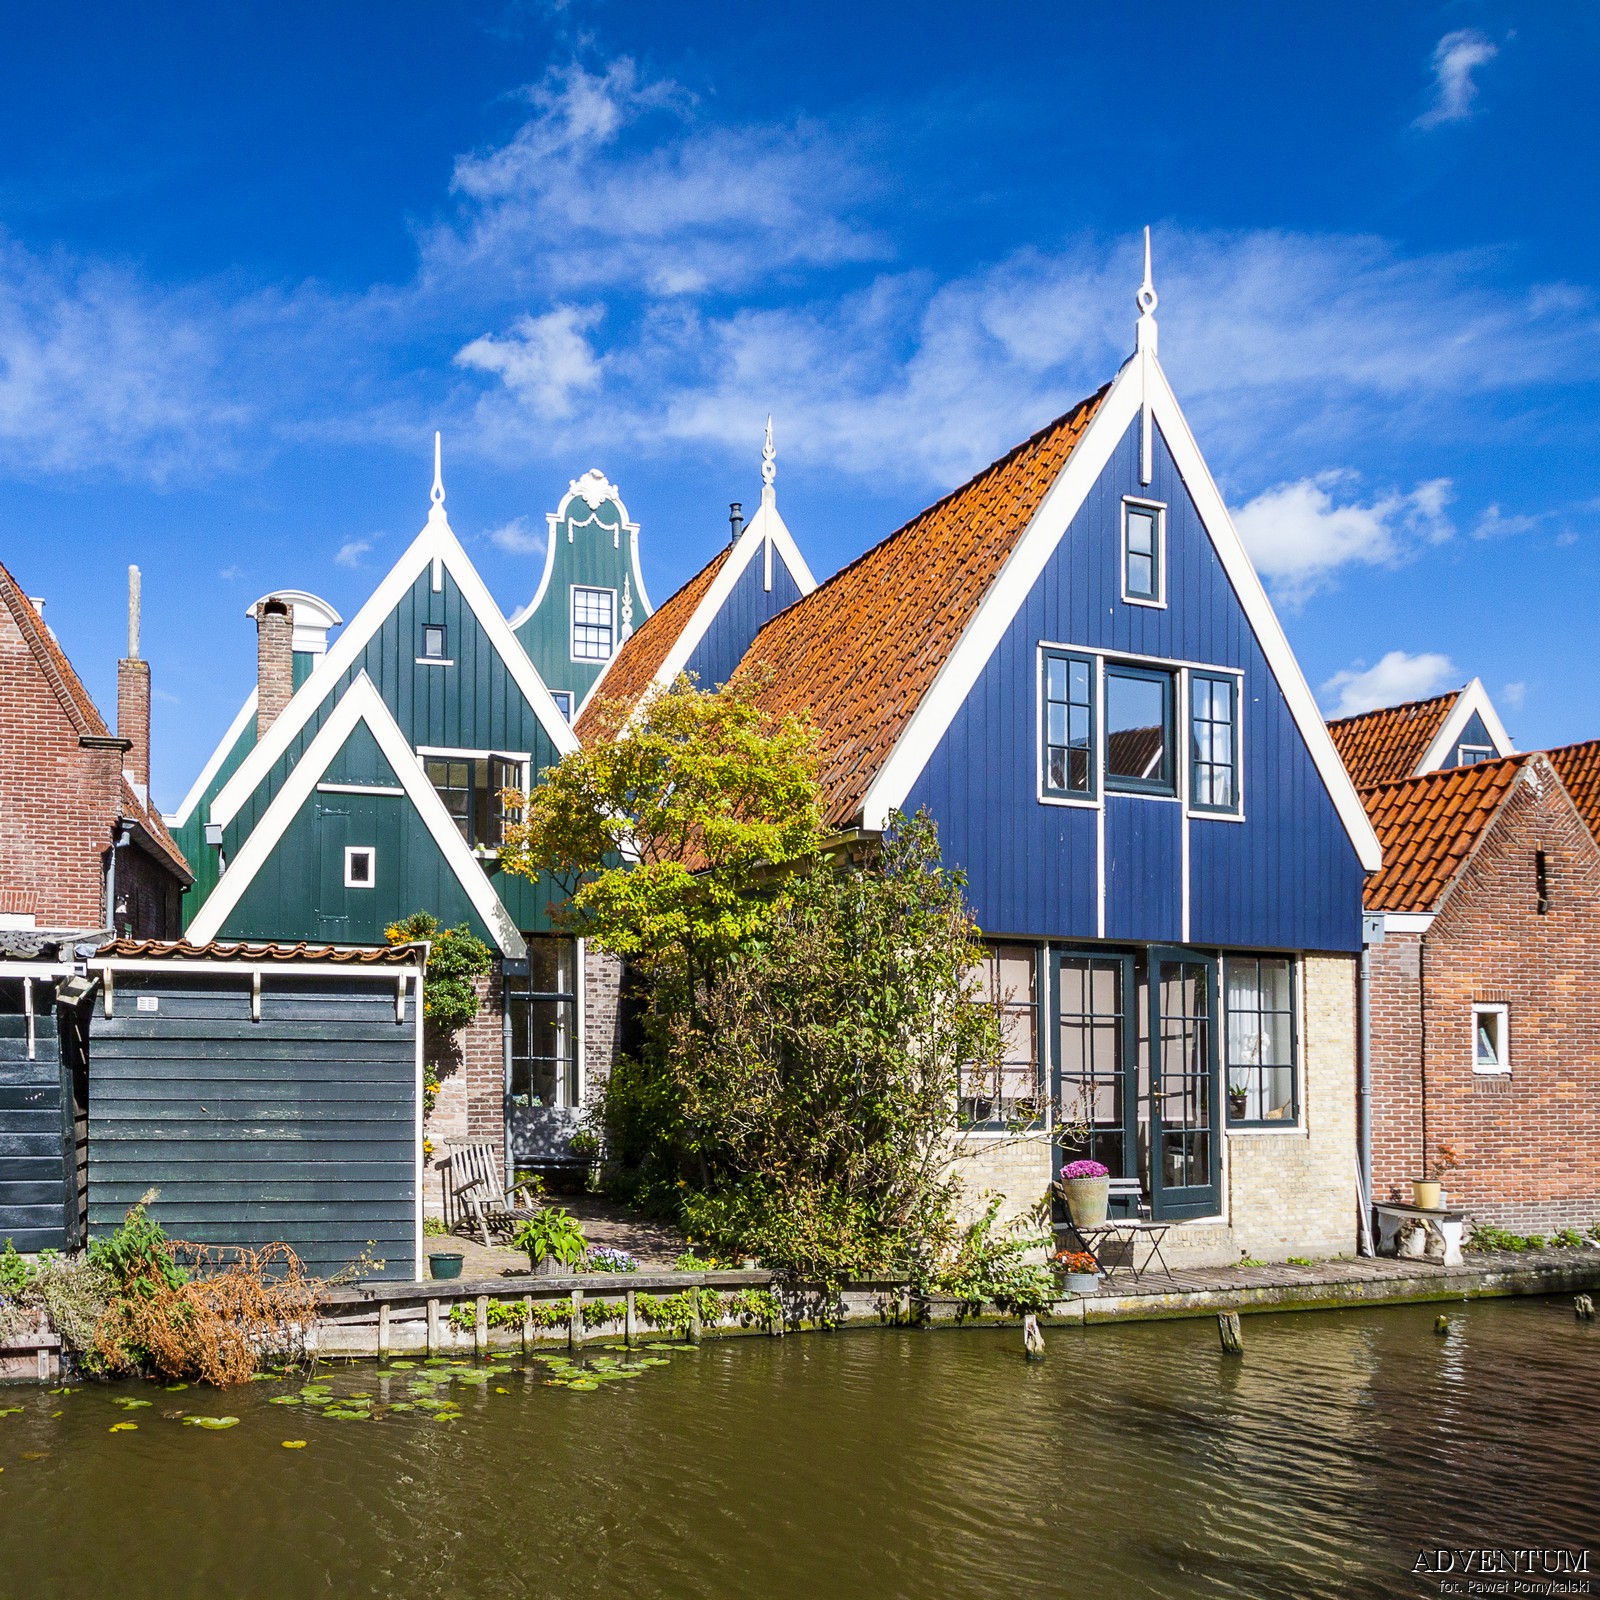 Holandia De Rijp Atrakcje Zwiedzanie co Zobaczyć Amsterdam Rotterdam Haga Kanały Wiatraki